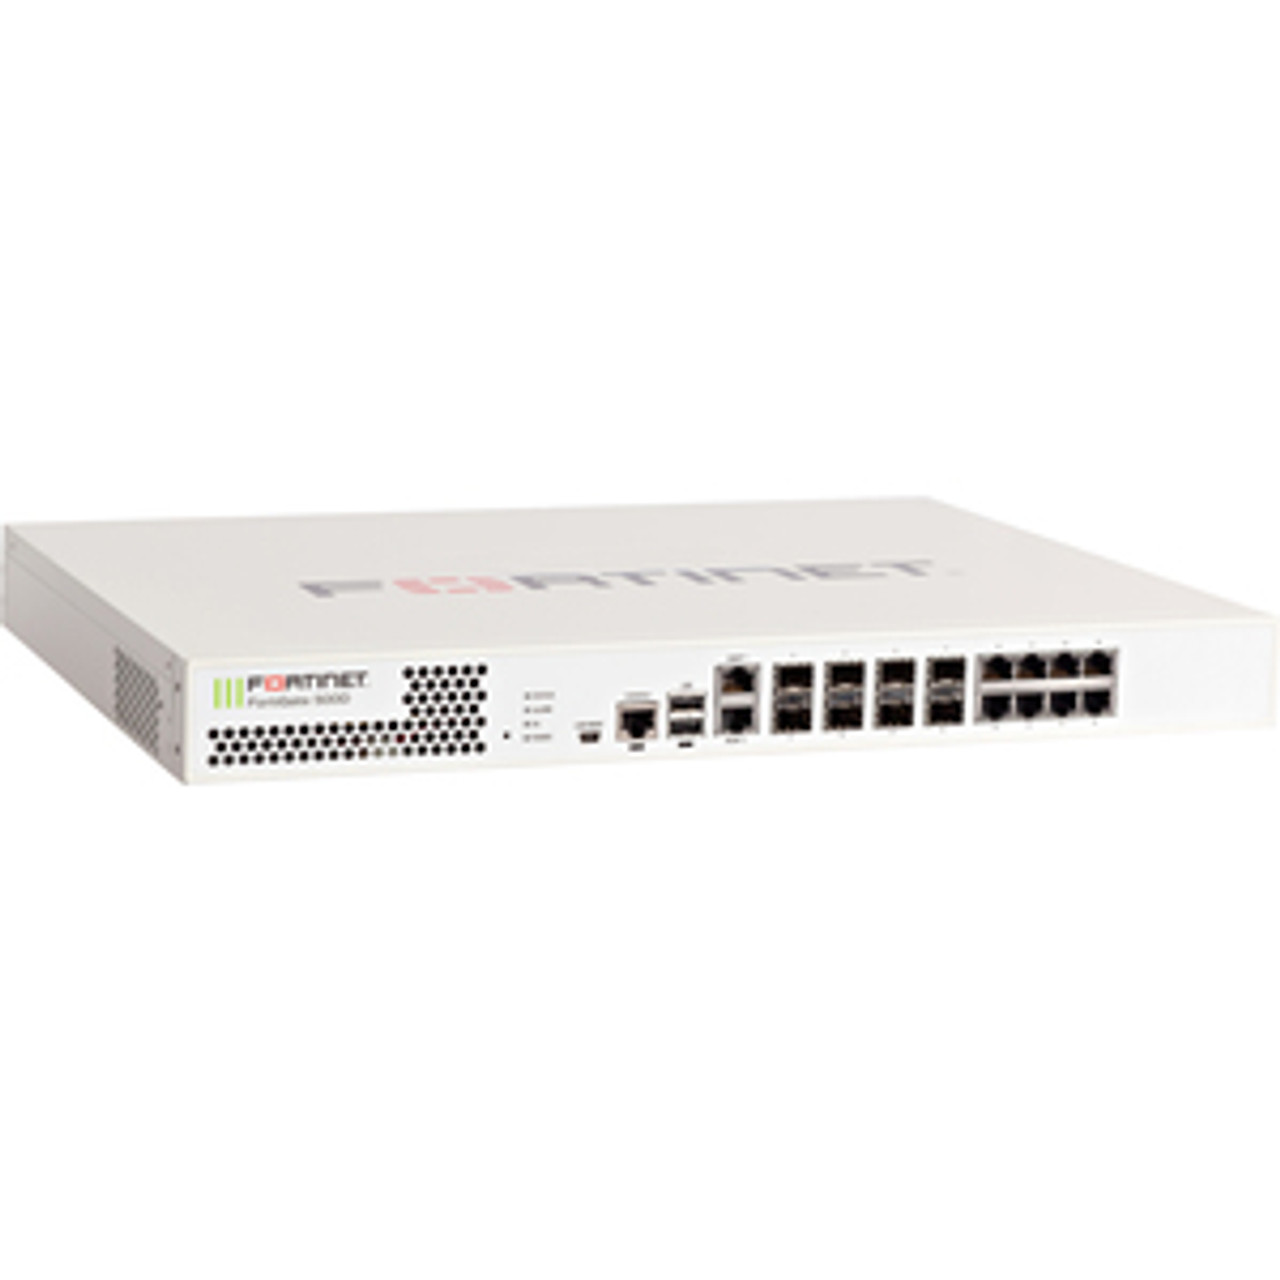 Fortinet FortiGate 500D Network Security/Firewall Appliance - 8 Port - 1000Base-T, 1000Base-X - Gigabit Ethernet - AES (256-bit), SHA-1 - 8 x RJ-45 - 8 Total Expansion Slots - 1U - Rack-mountable, Desktop FC